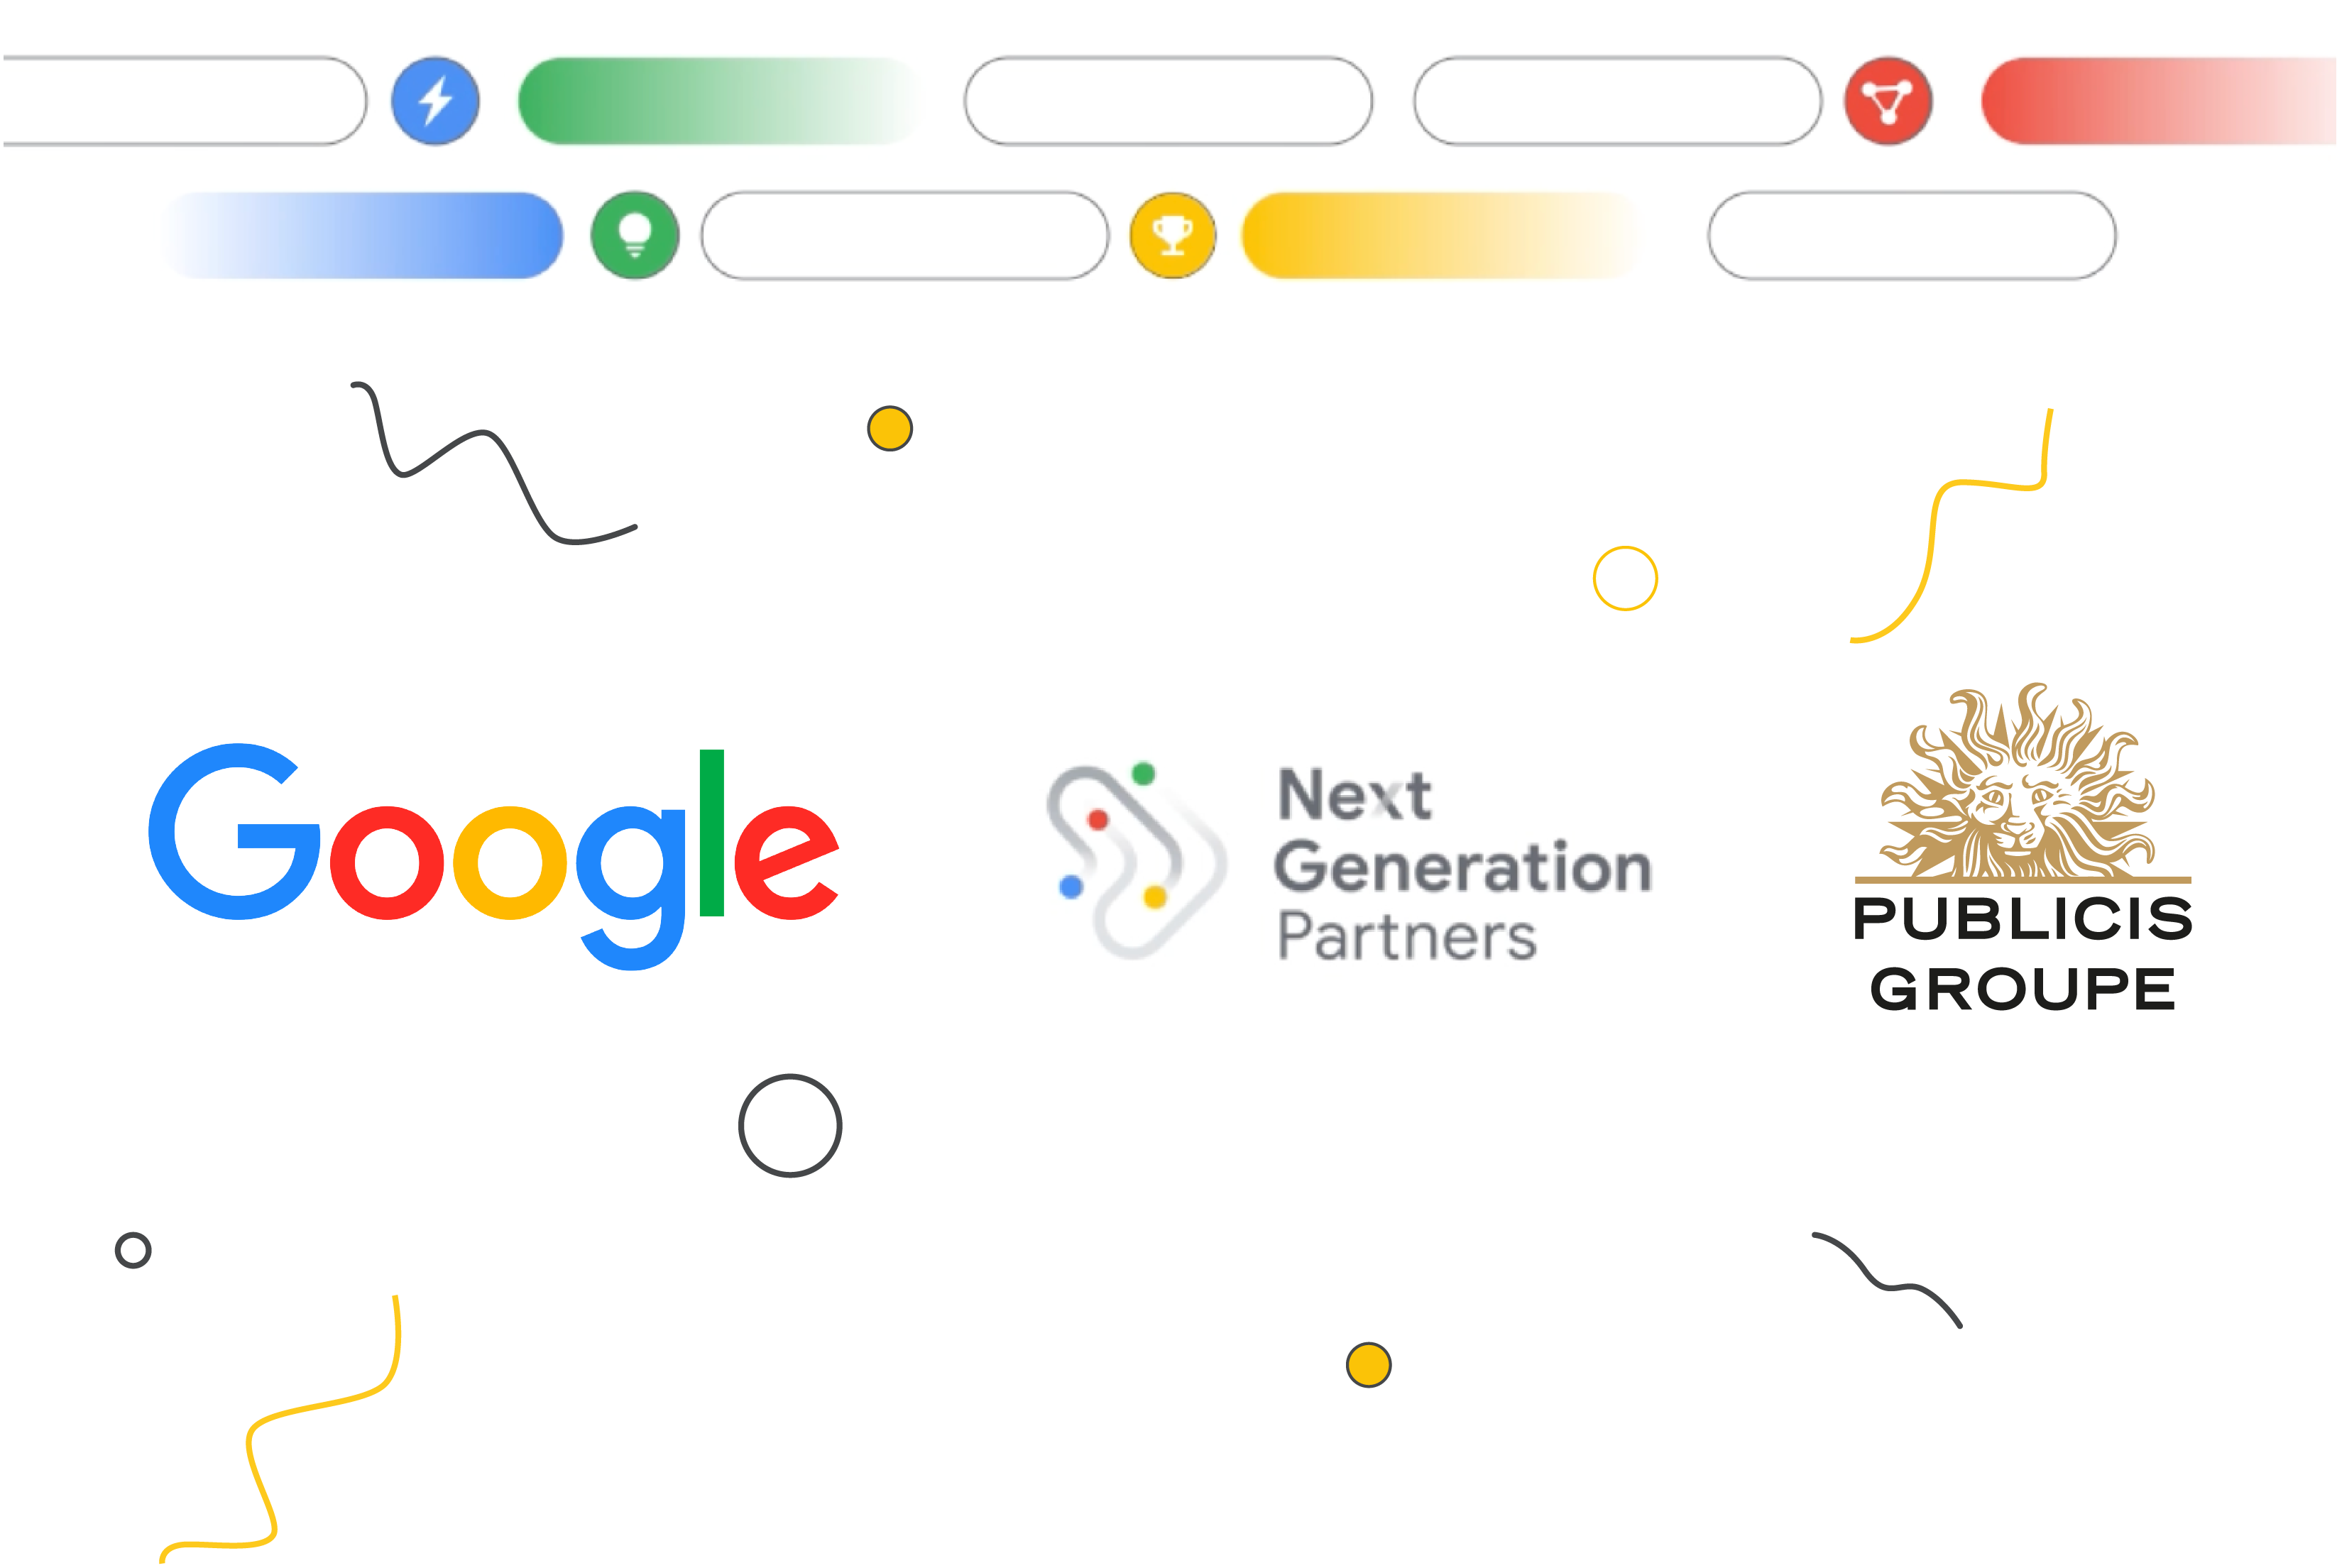 Next Generation Partners de Google reconoce a Publicis Groupe